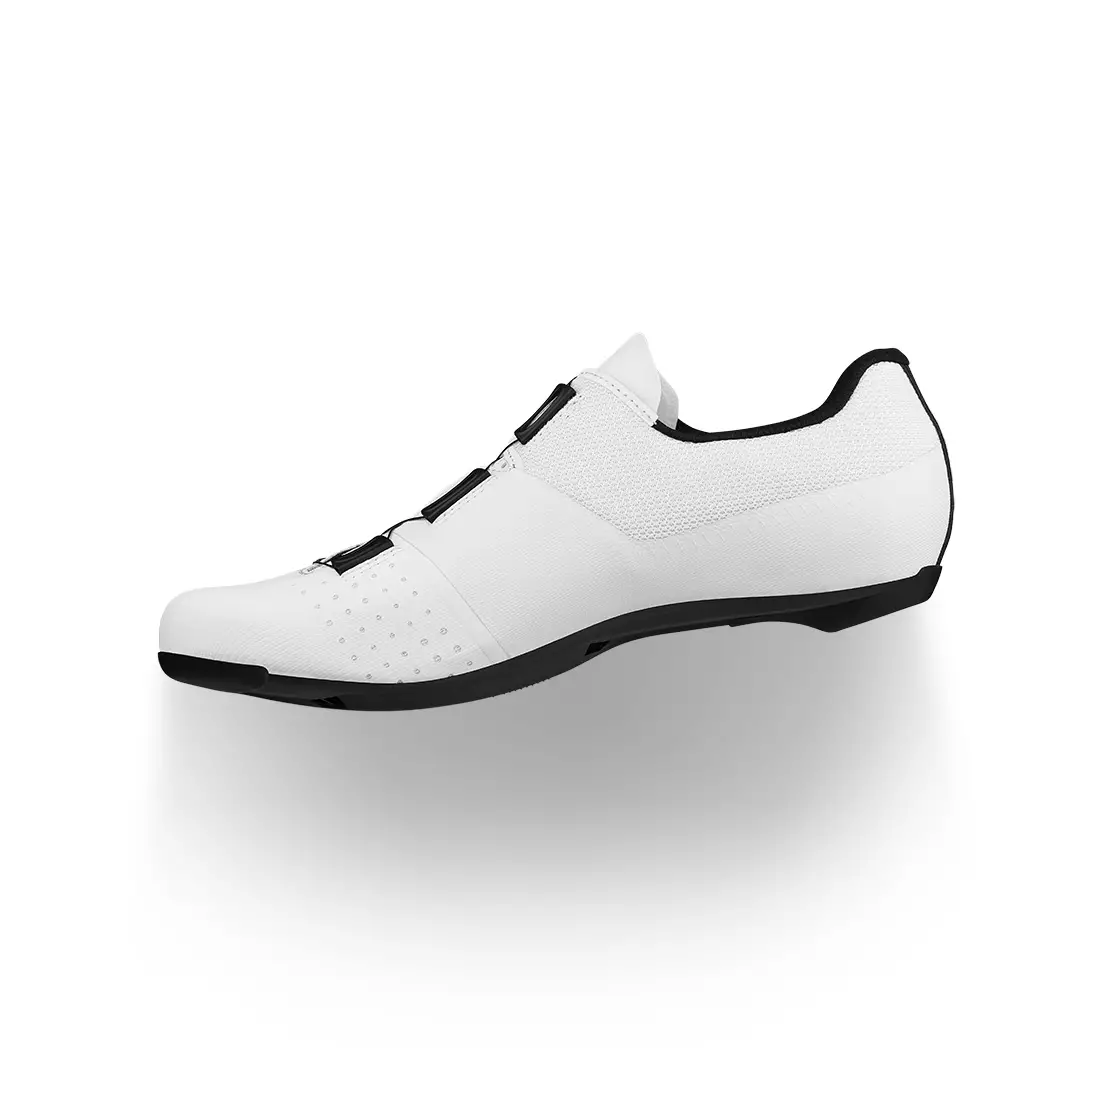 FIZIK R4 Overcurve cestné cyklistické topánky, biely